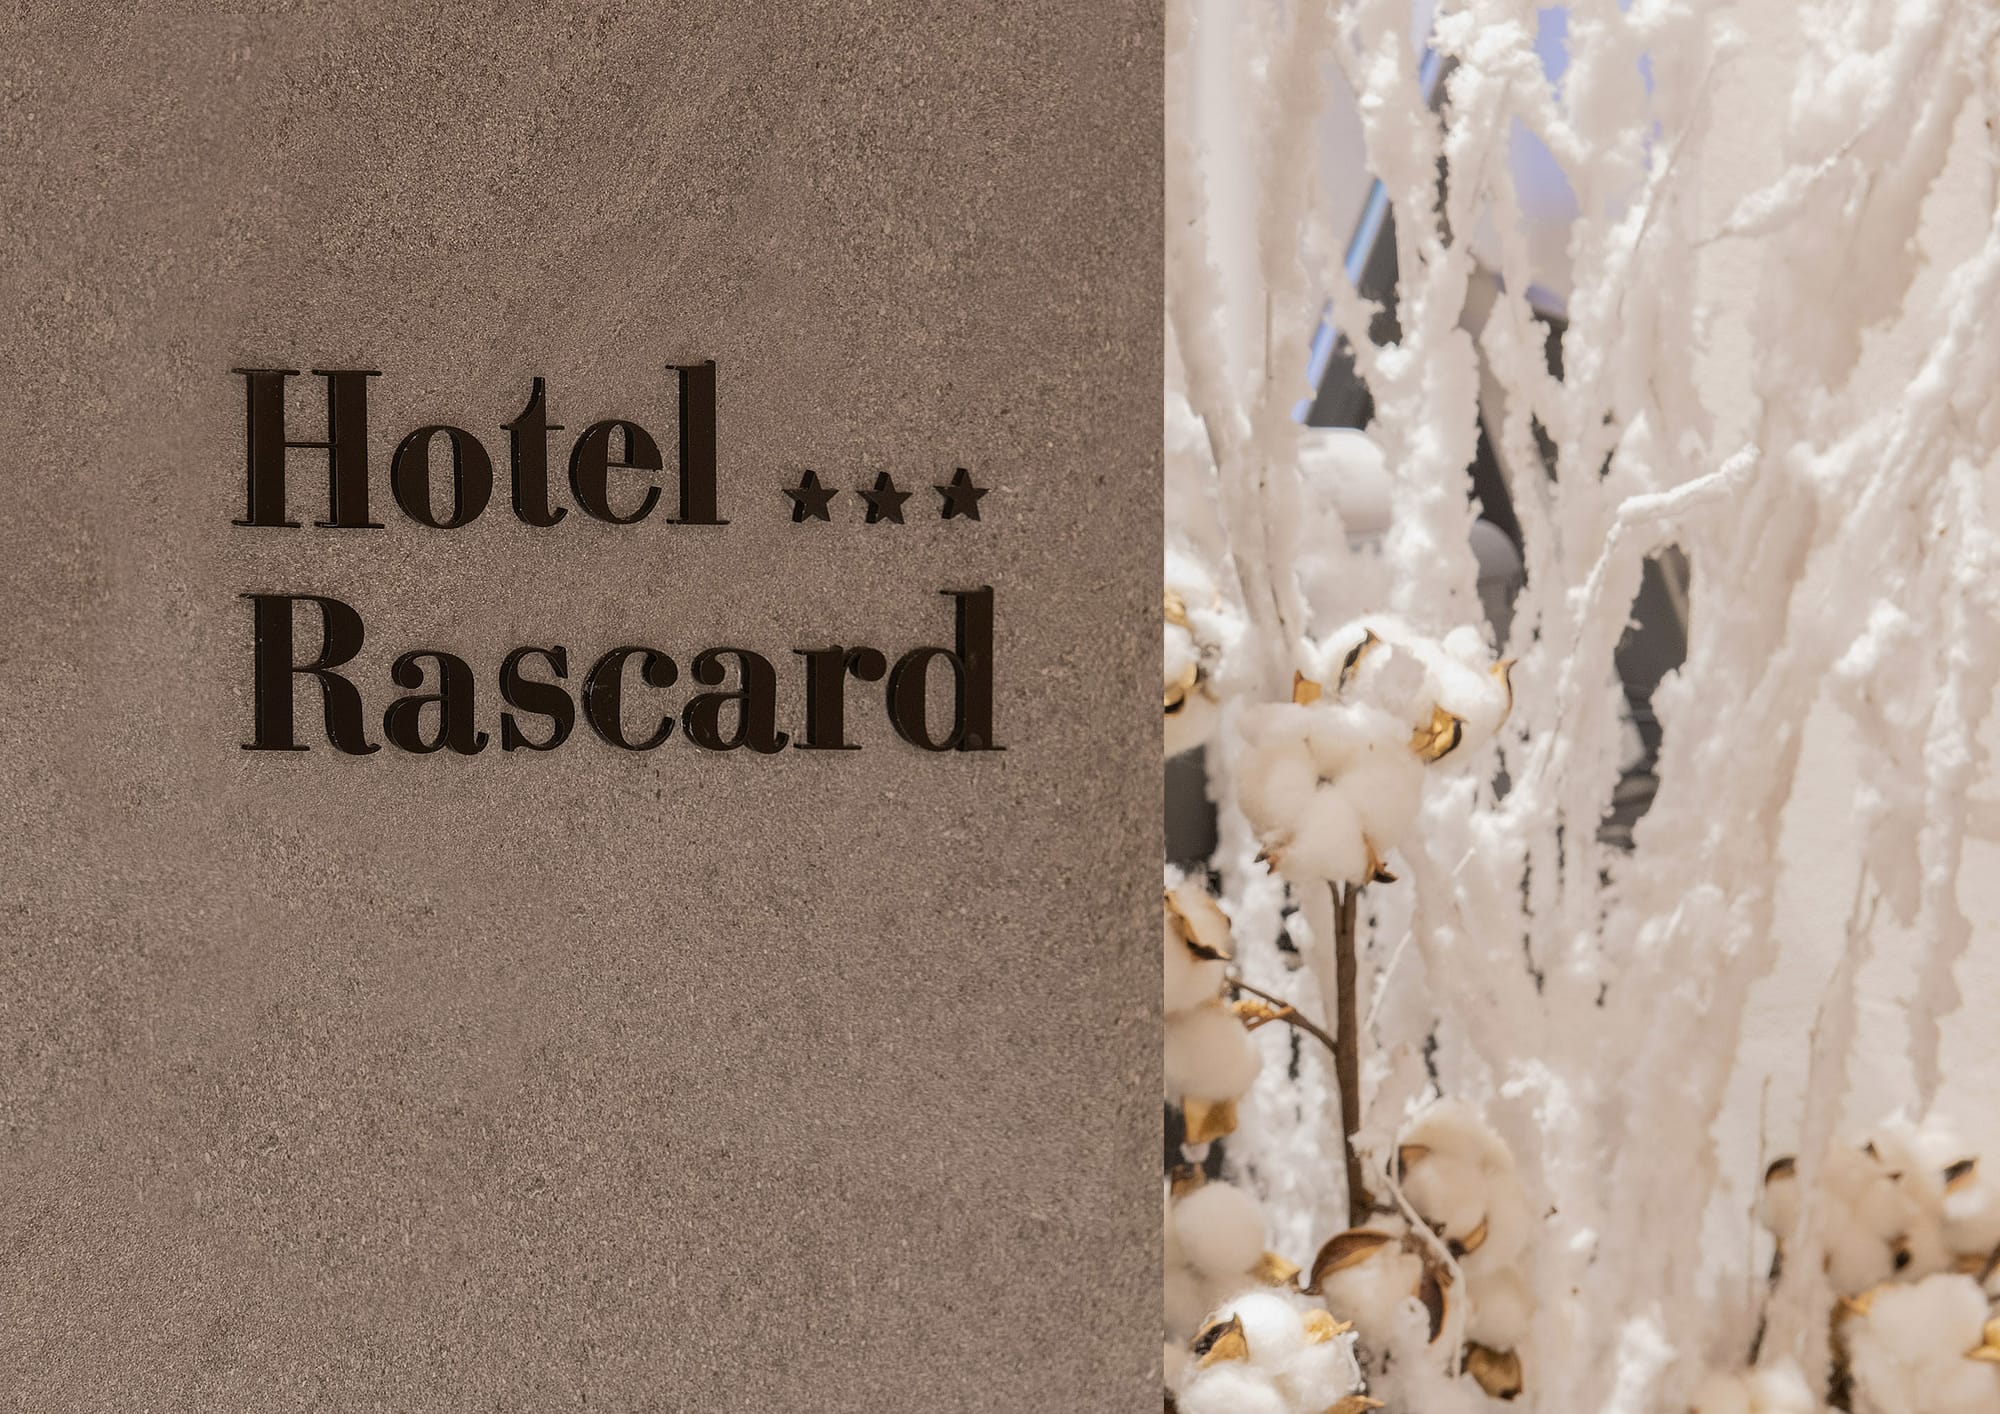 Hotel Rascard, vista di dettaglio su marchio collocato sul desk reception